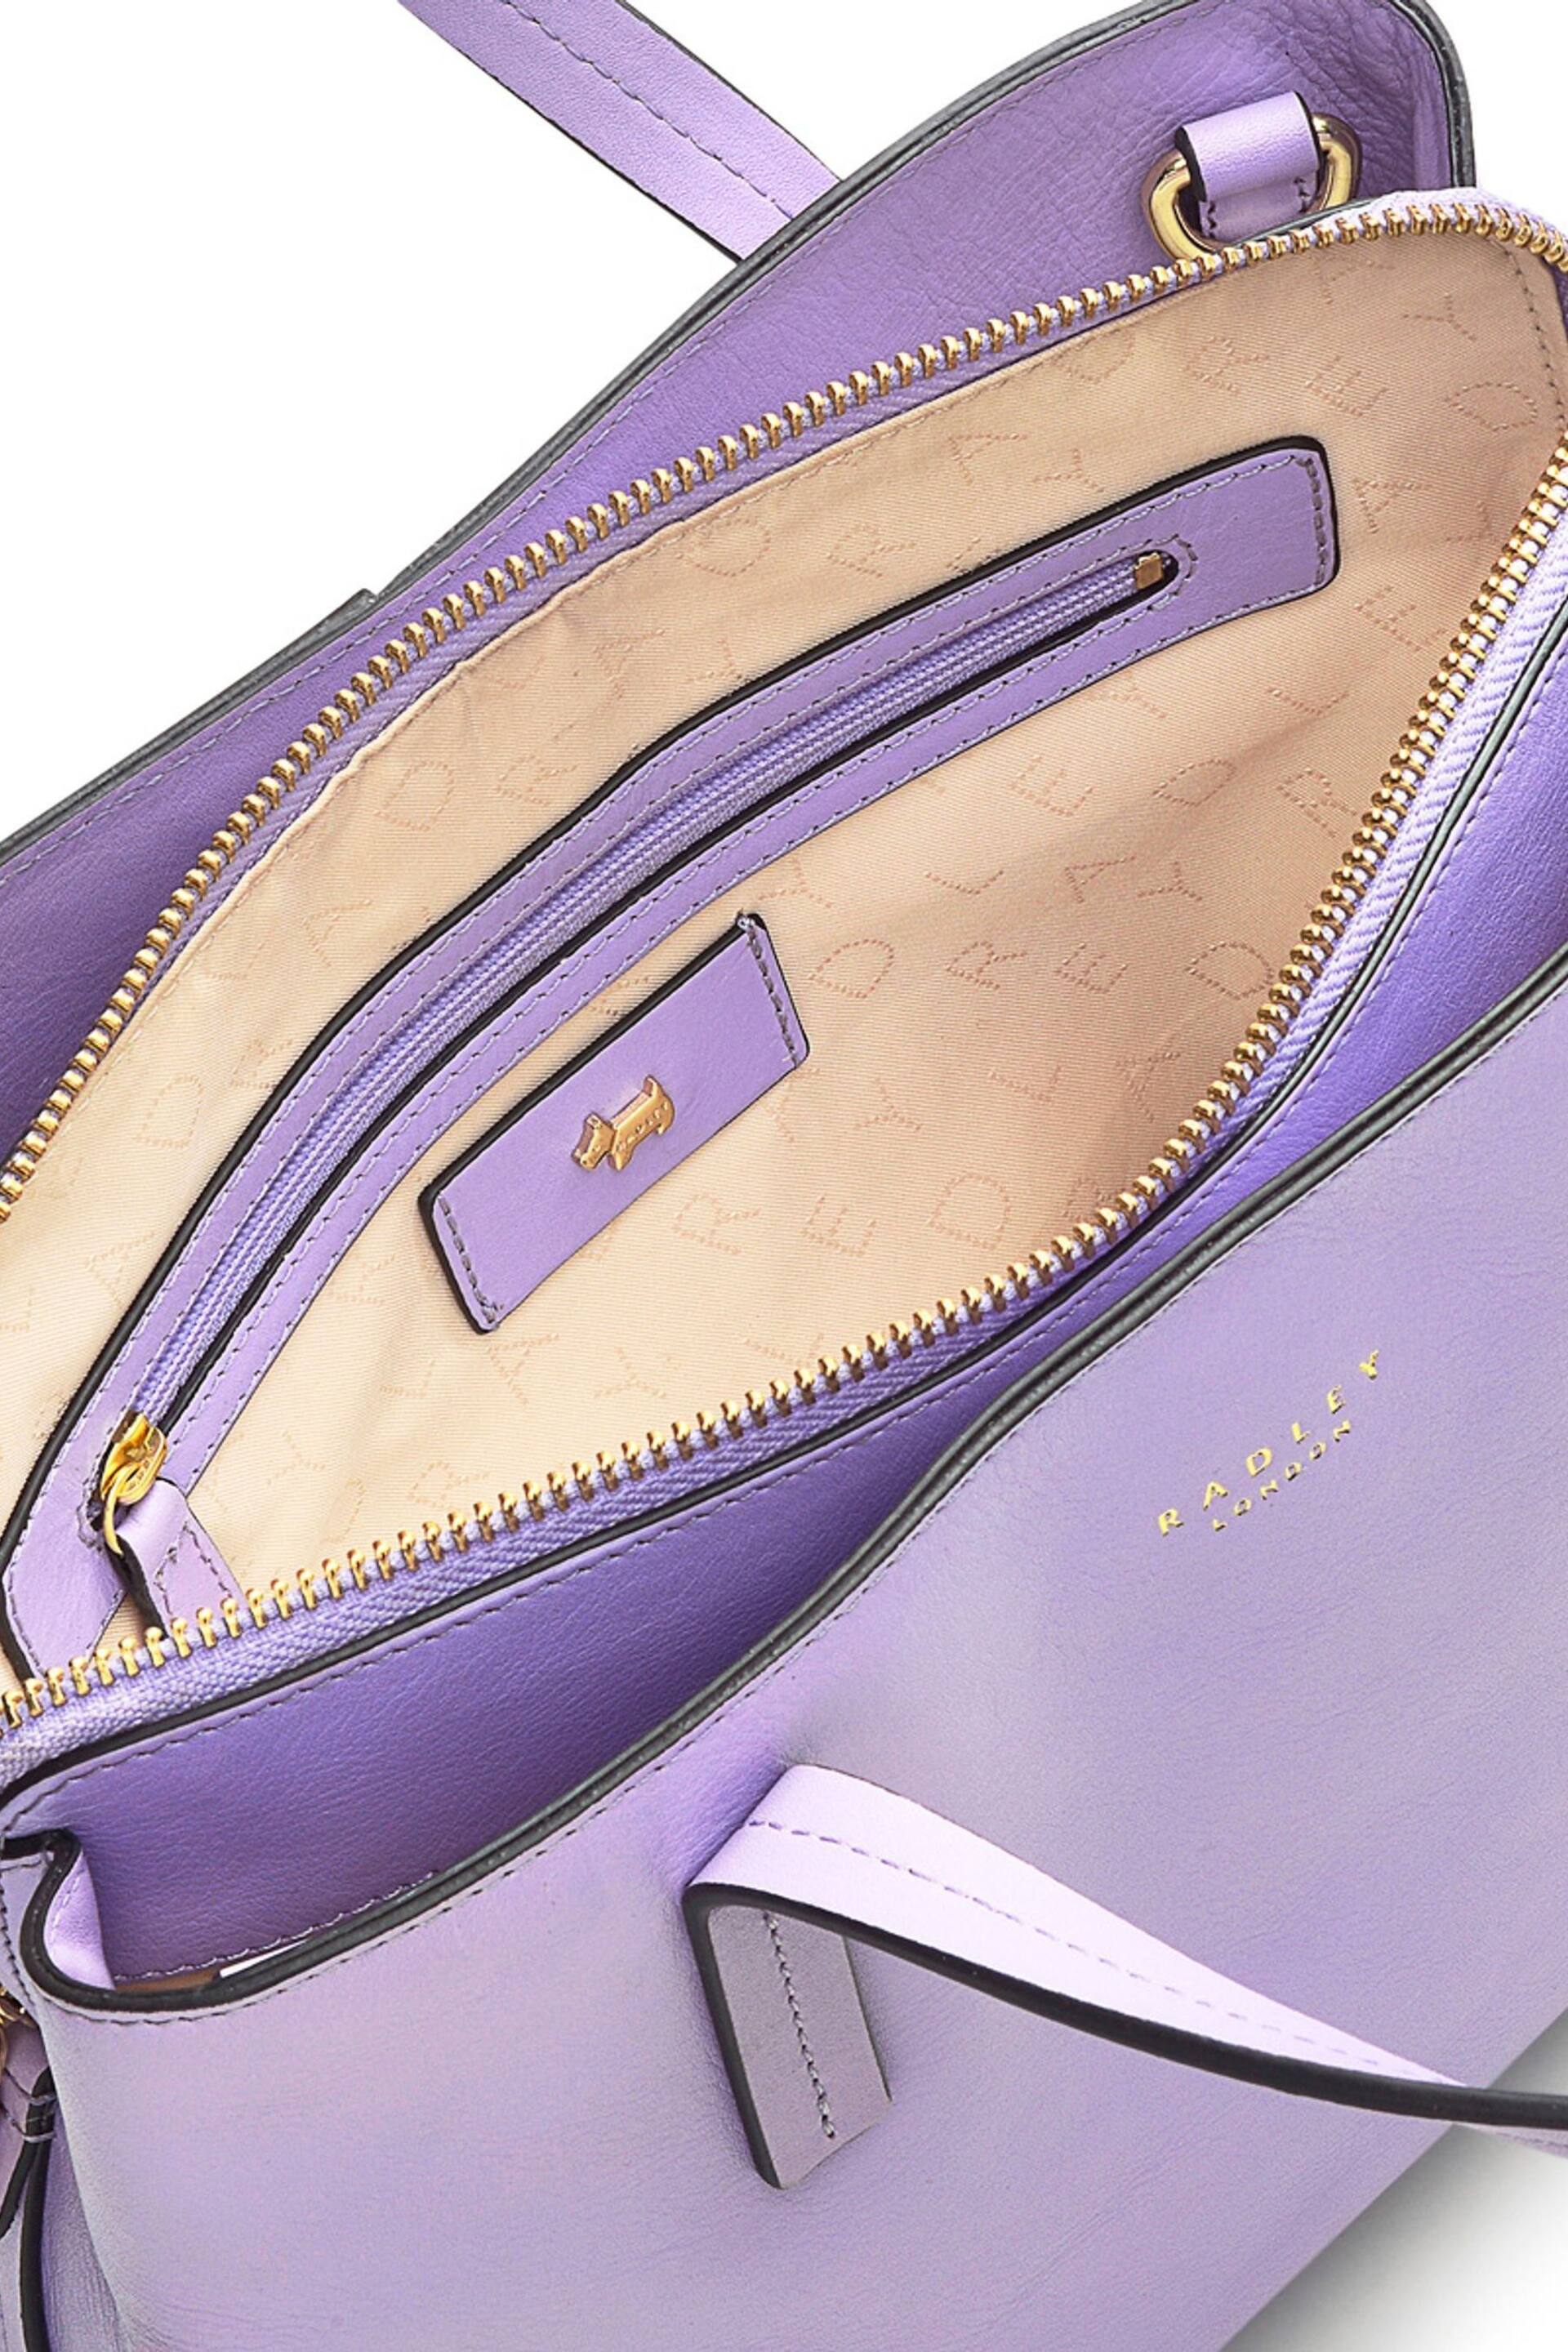 Radley London Medium Dukes Place Ziptop Grab Bag - Image 3 of 3